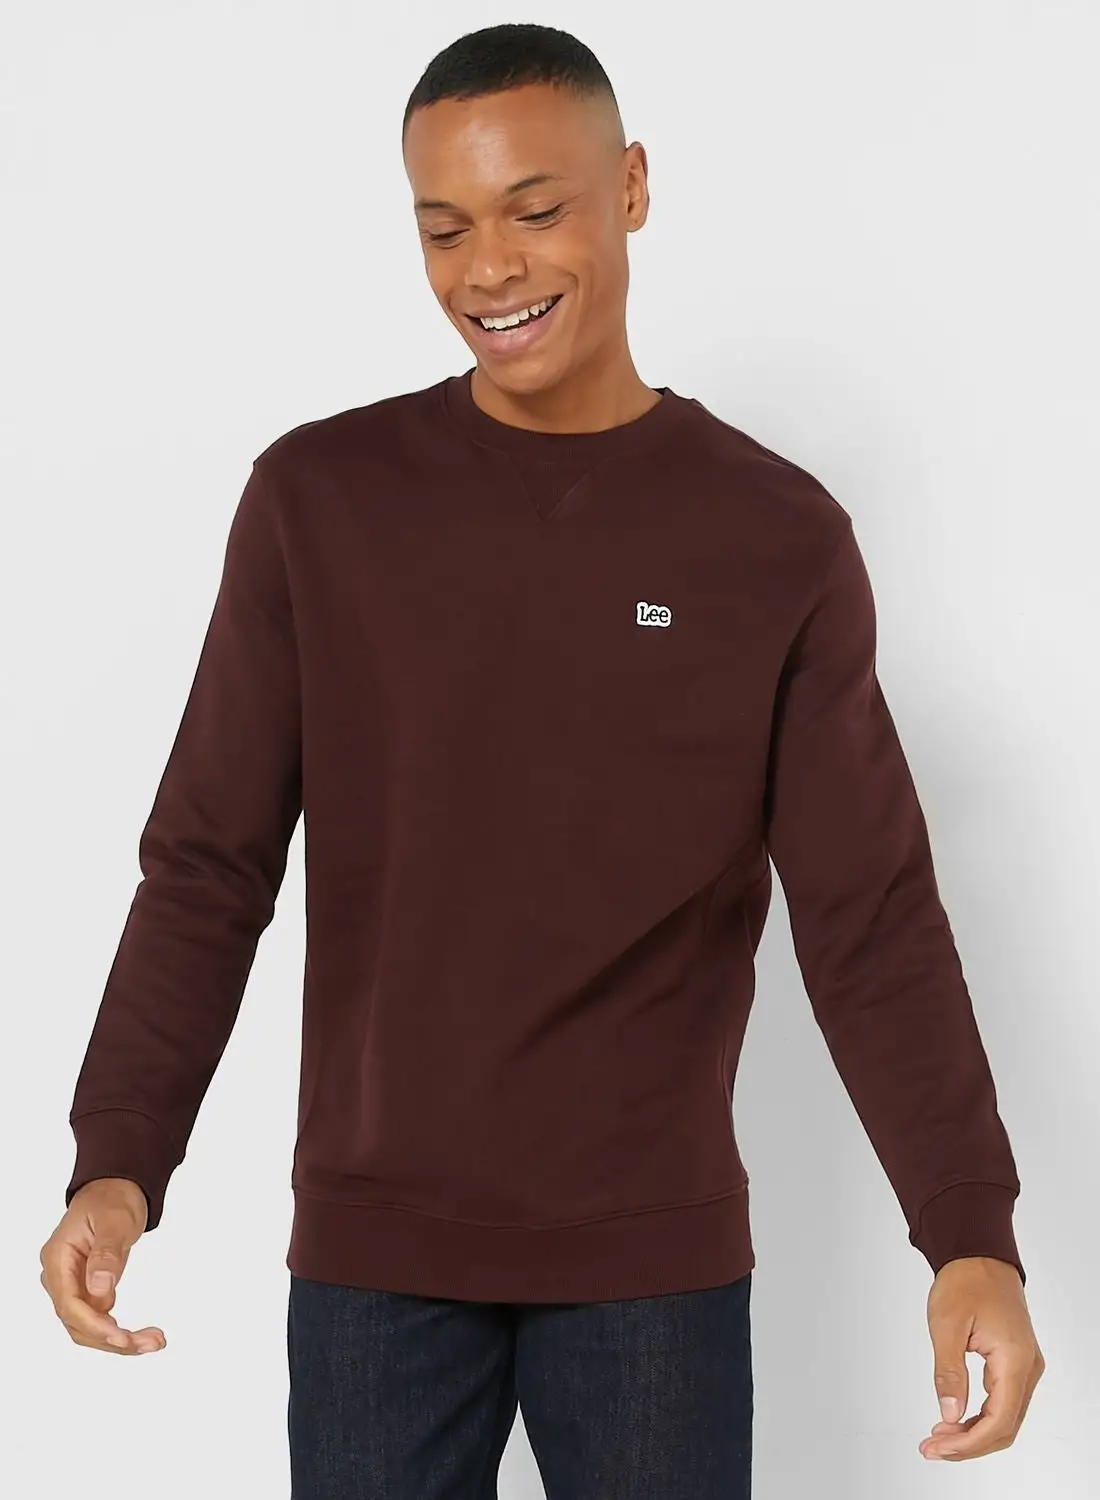 LEE Essential Sweatshirt